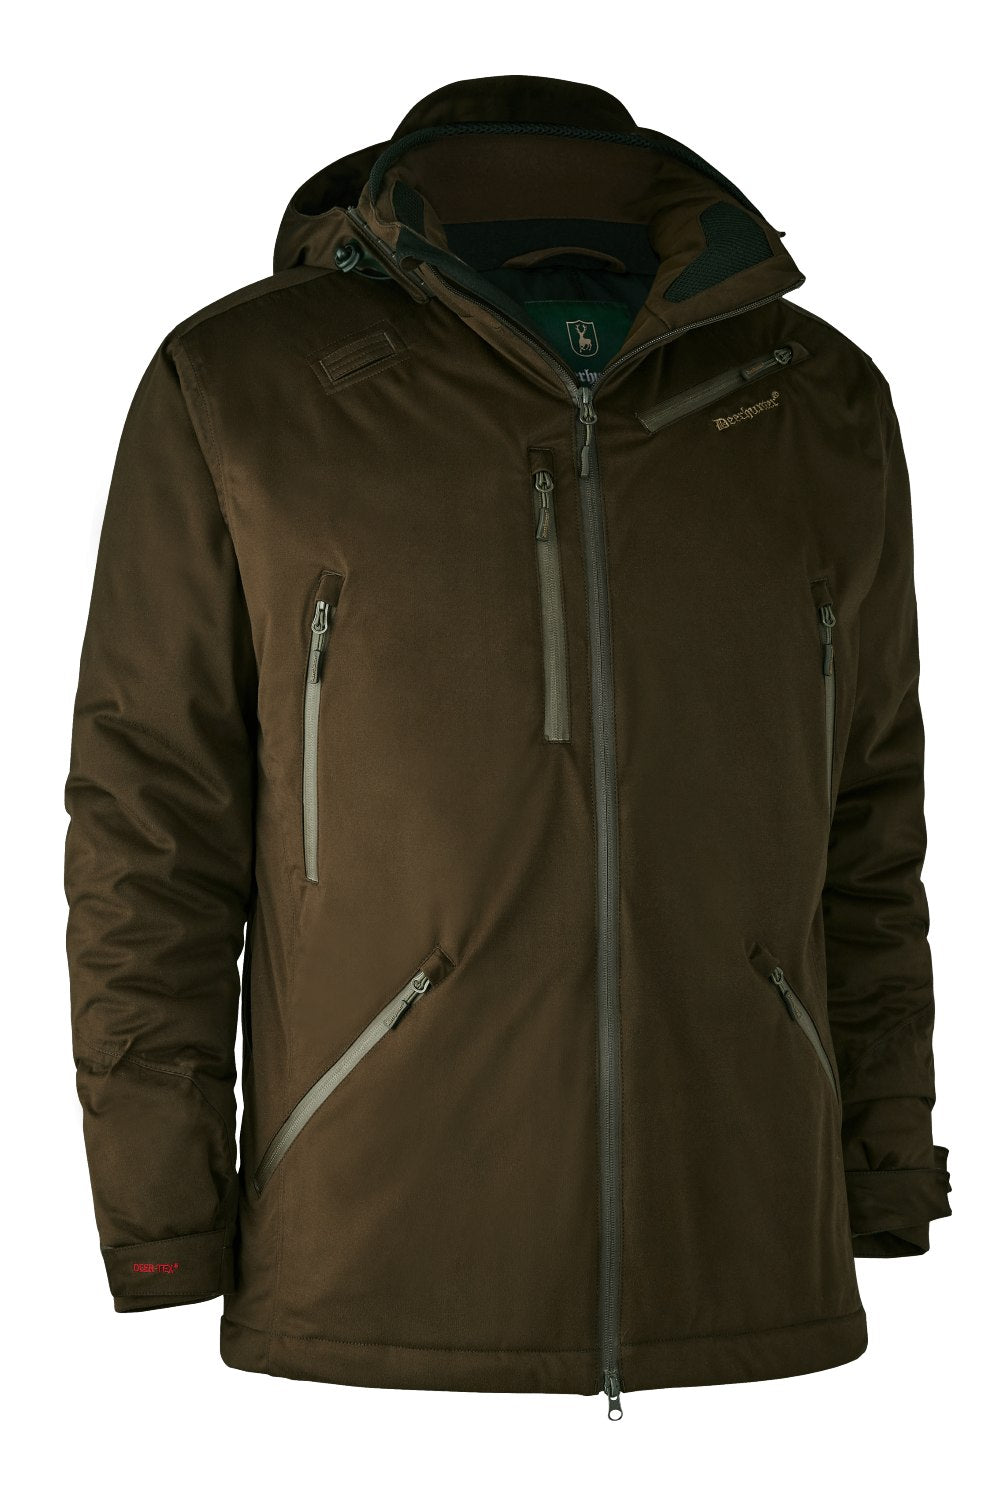 Deerhunter Excape Winter Waterproof Jacket 